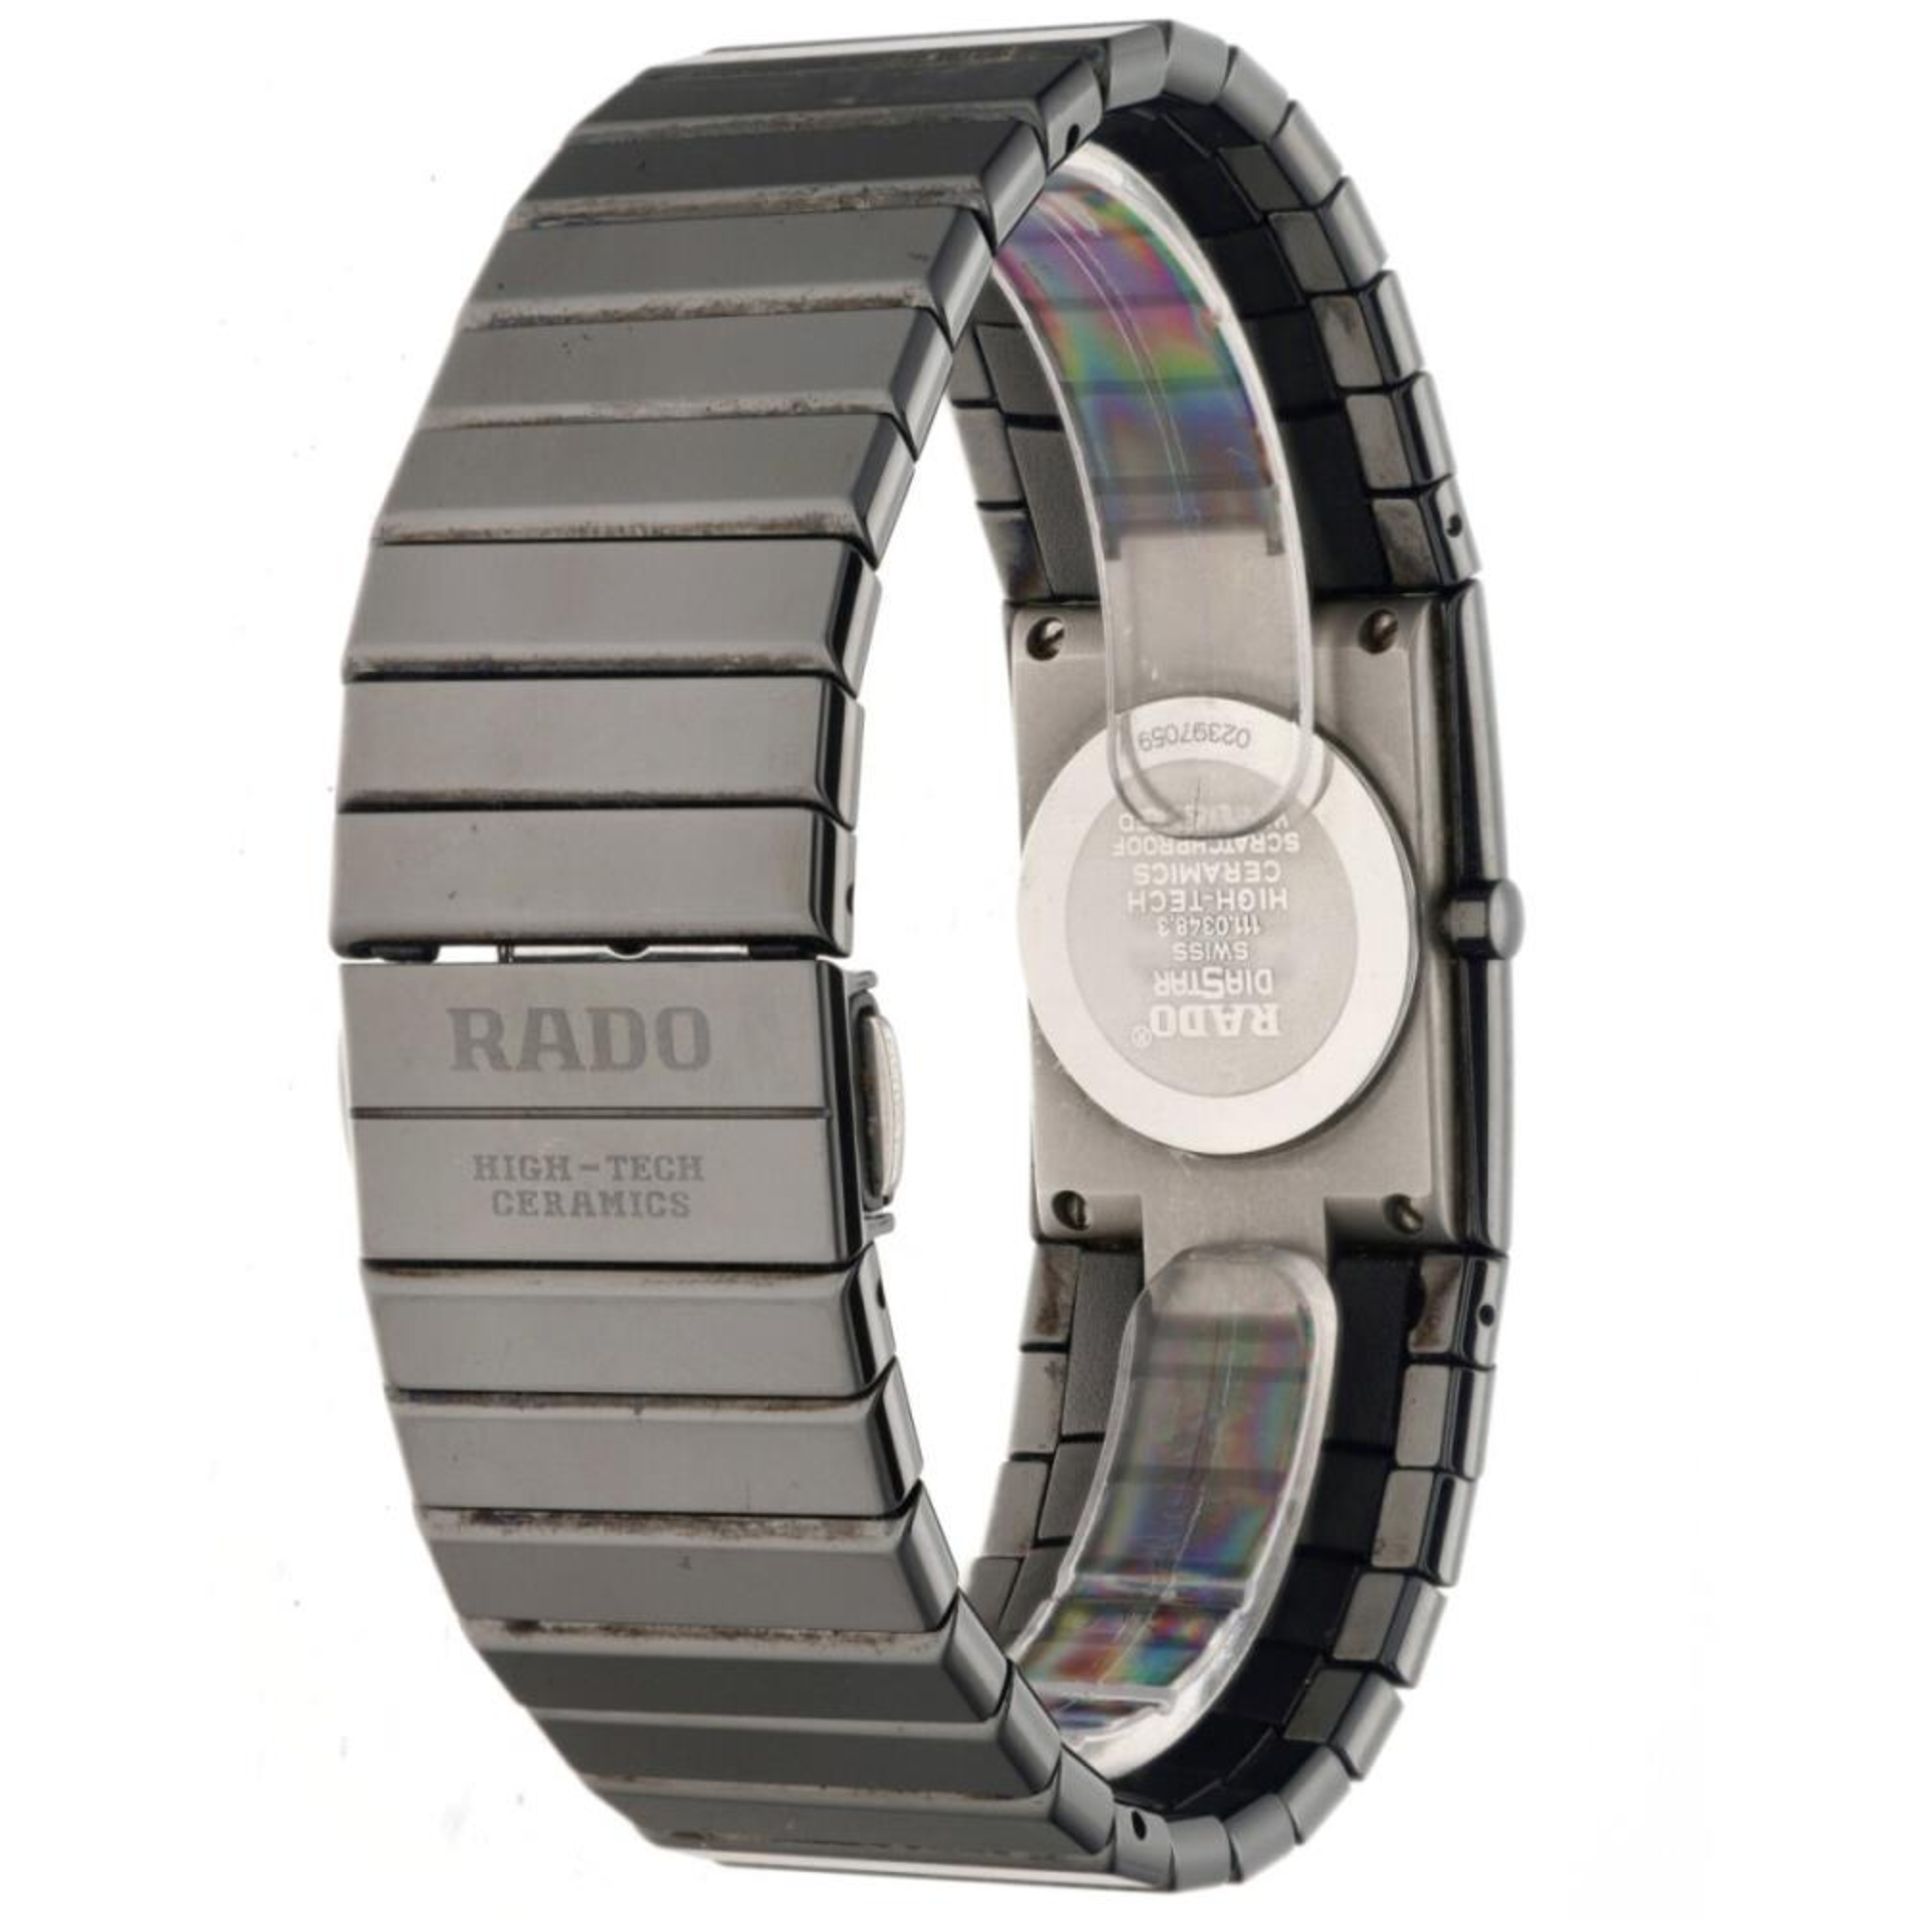 Rado Diastar 111.0348.3 - Unisex watch - Approx. 2005. - Bild 3 aus 5